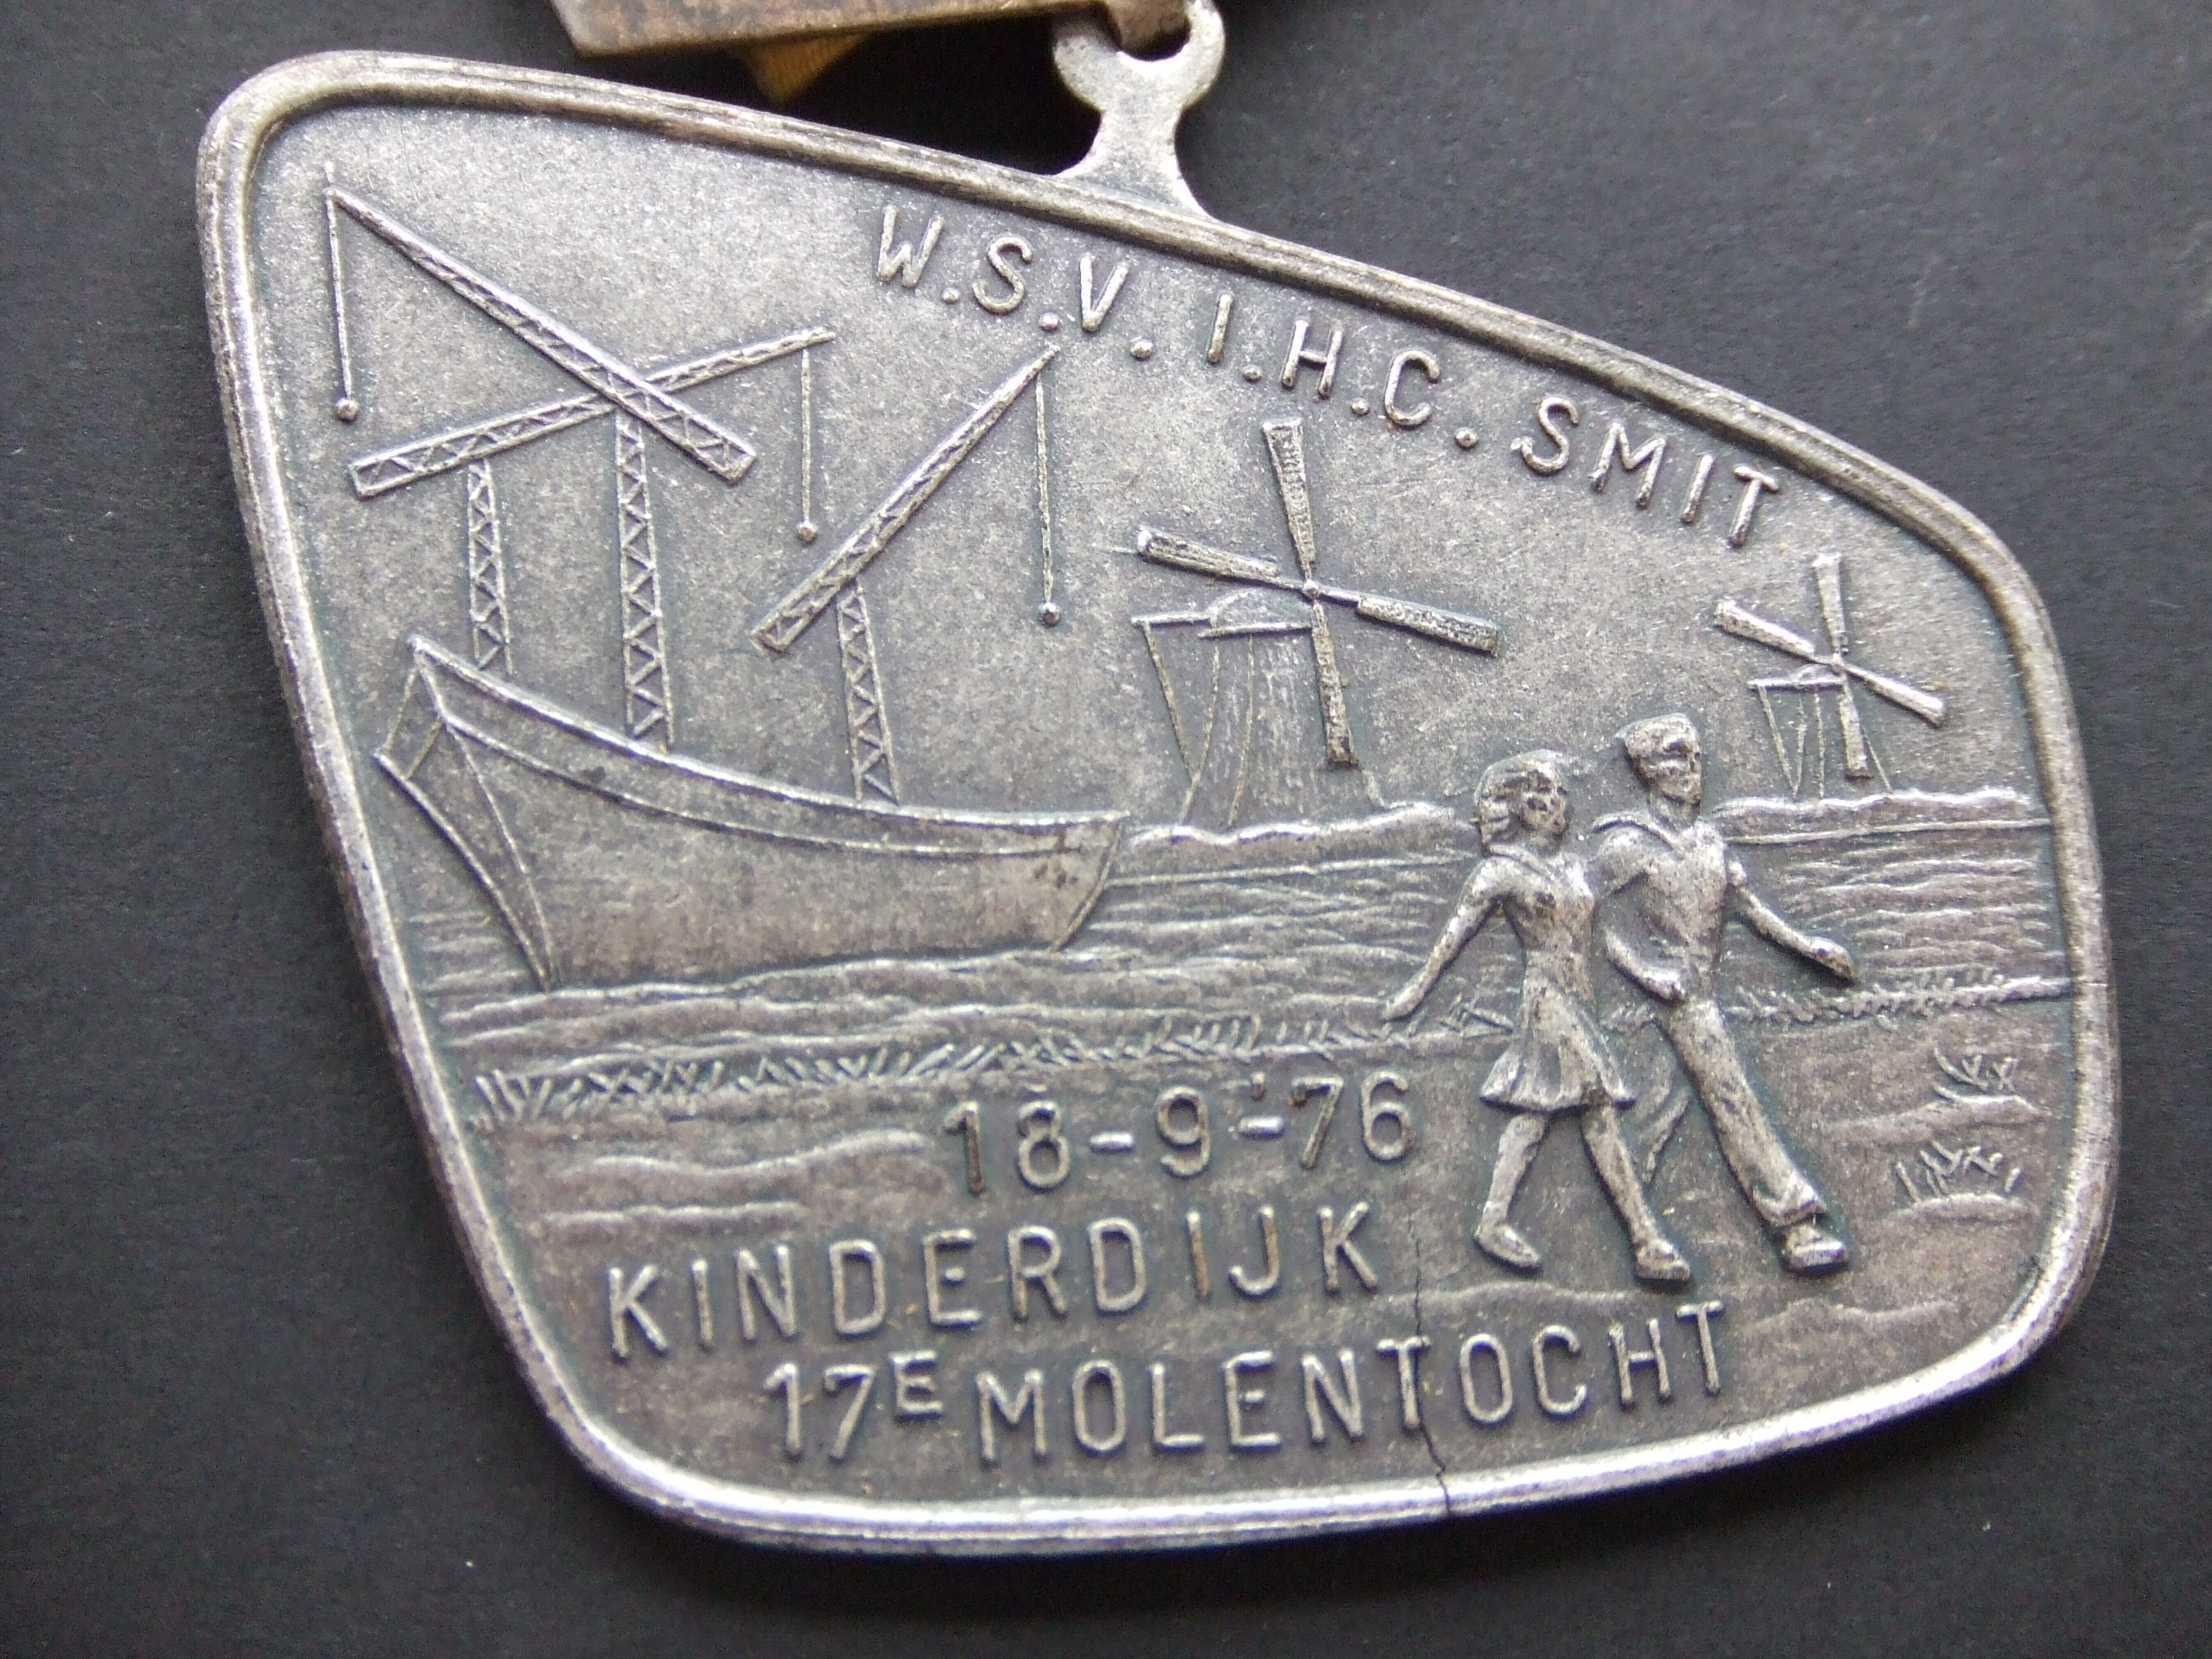 Wandelsportvereniging I.H.C.Smit Kinderdijk ( scheepswerf J & K Smit) molens kinderdijk